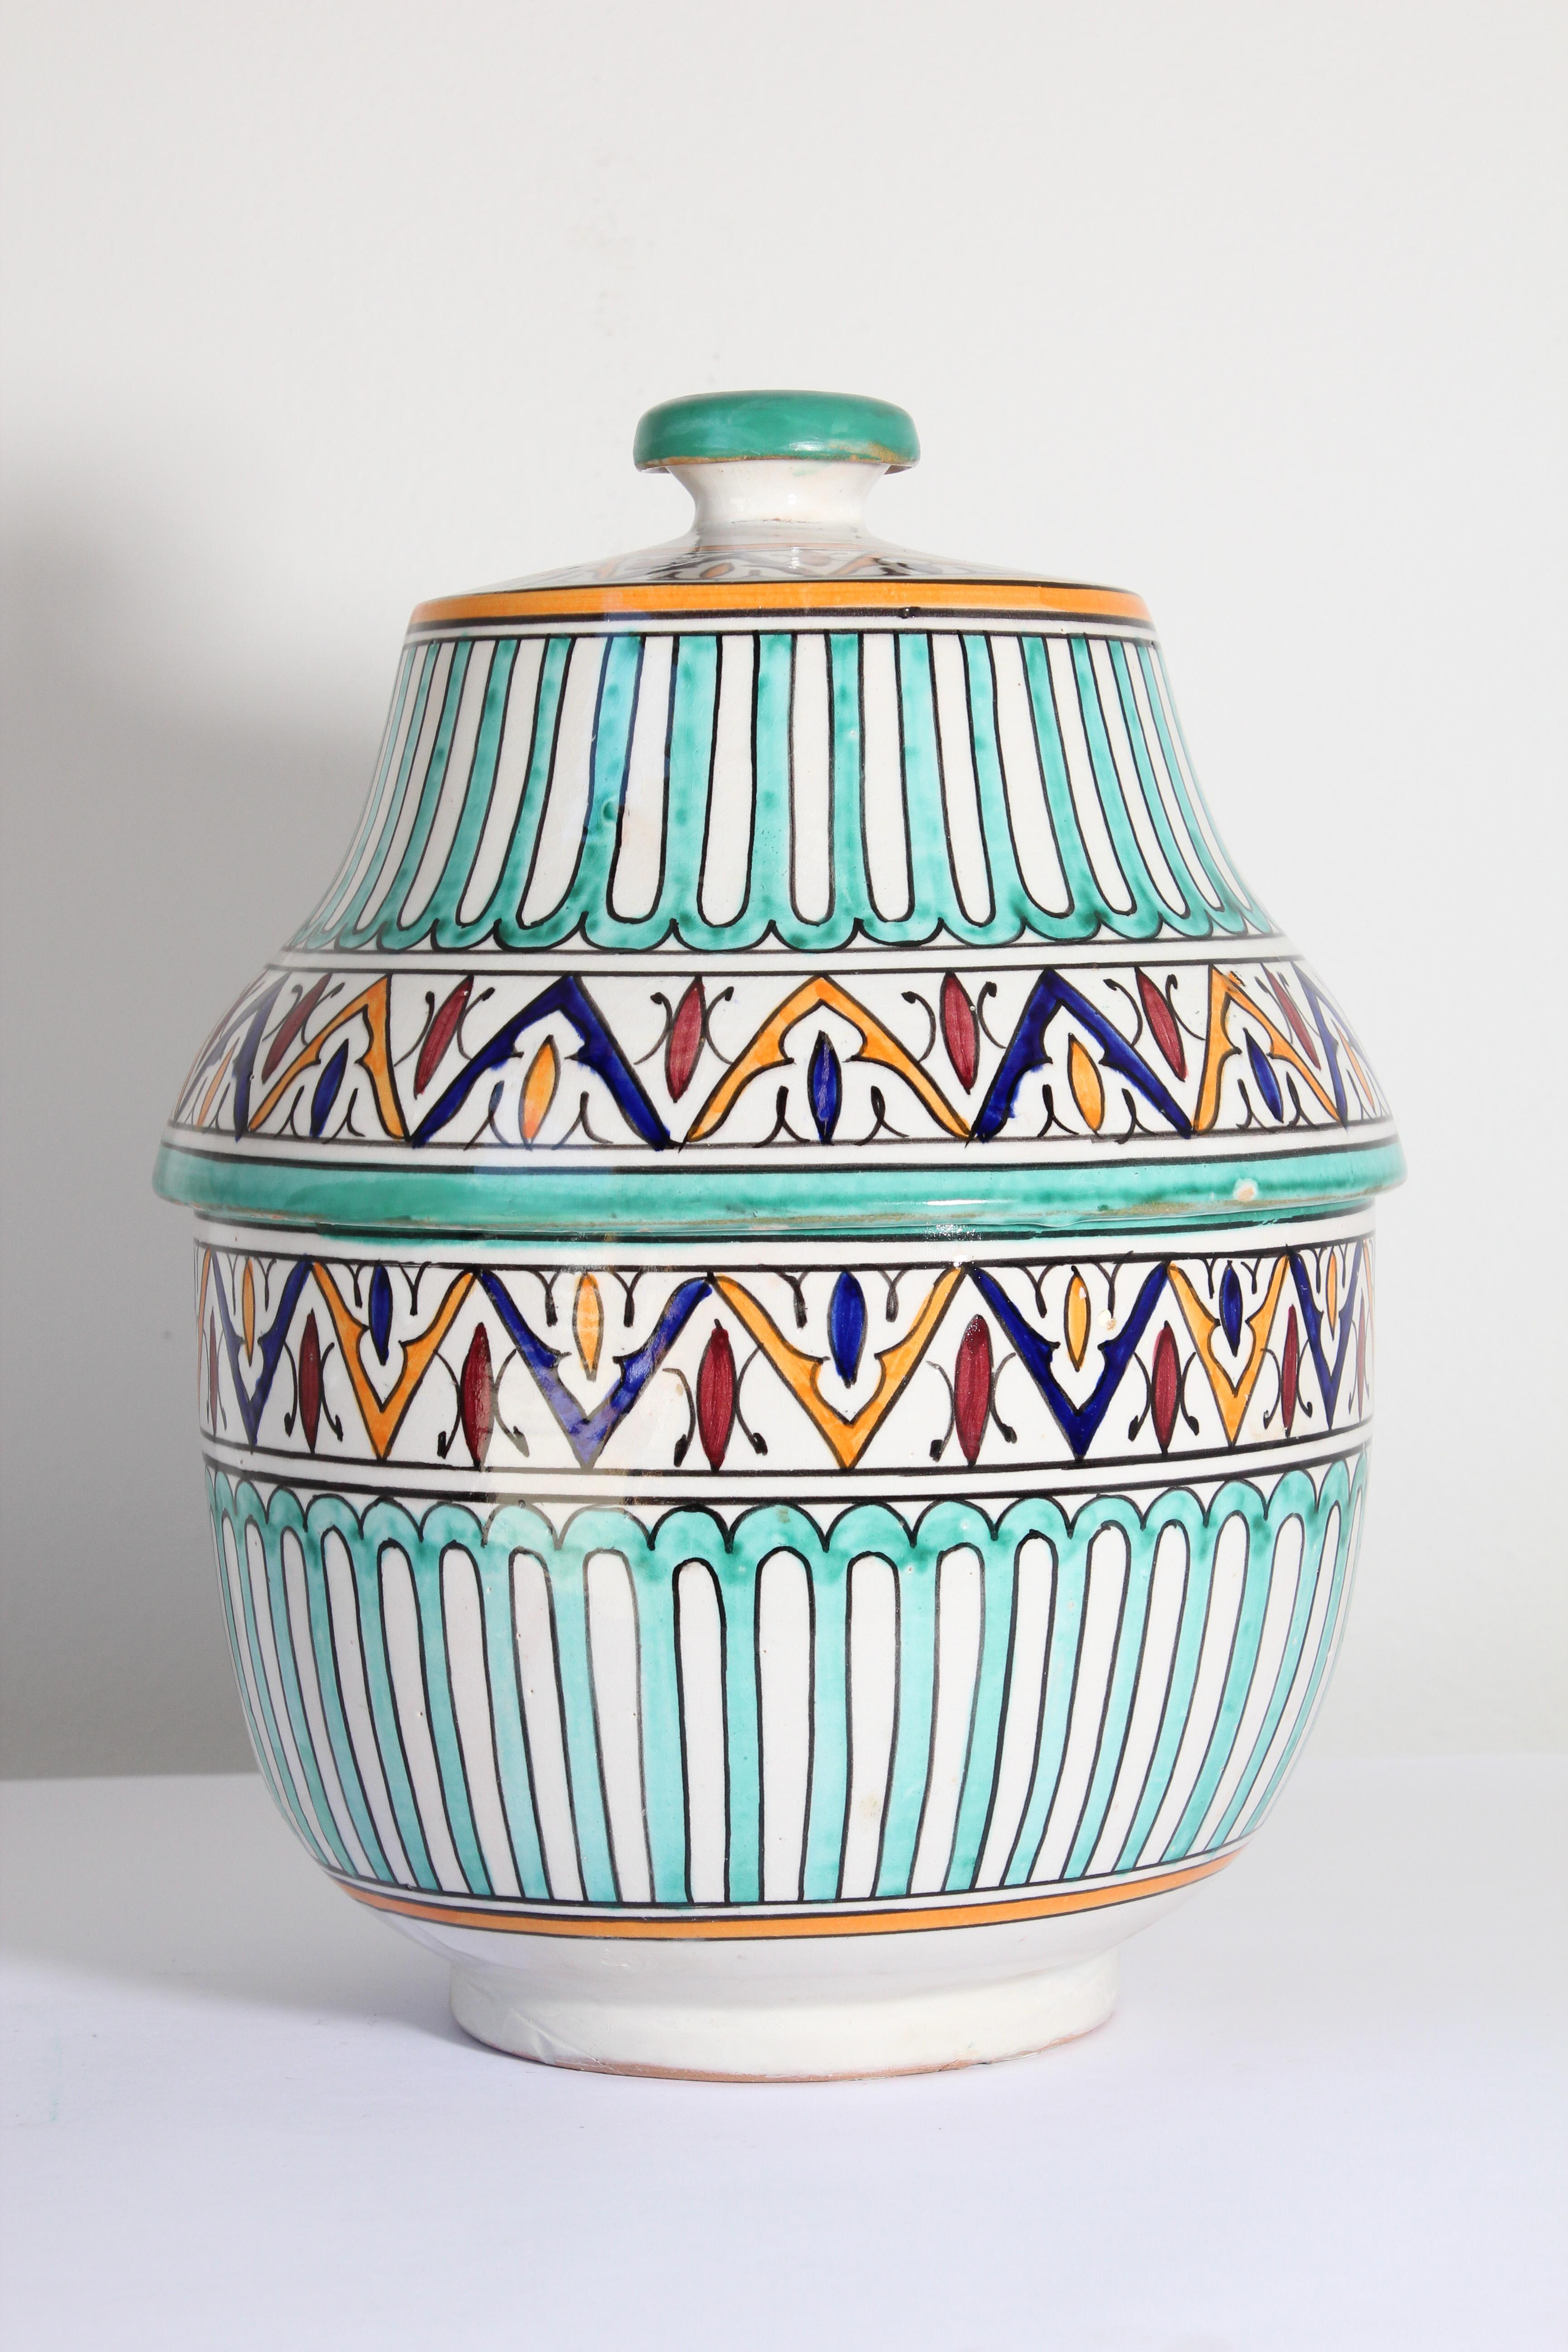 Soupière en céramique polychrome émaillée marocaine avec couvercle.
Jubbana en céramique peinte à la main, fabriquée par des artisans marocains qualifiés à Fès, au Maroc.
Motifs mauresques dans les couleurs turquoise, bleu cobalt, sarcelle, jaune